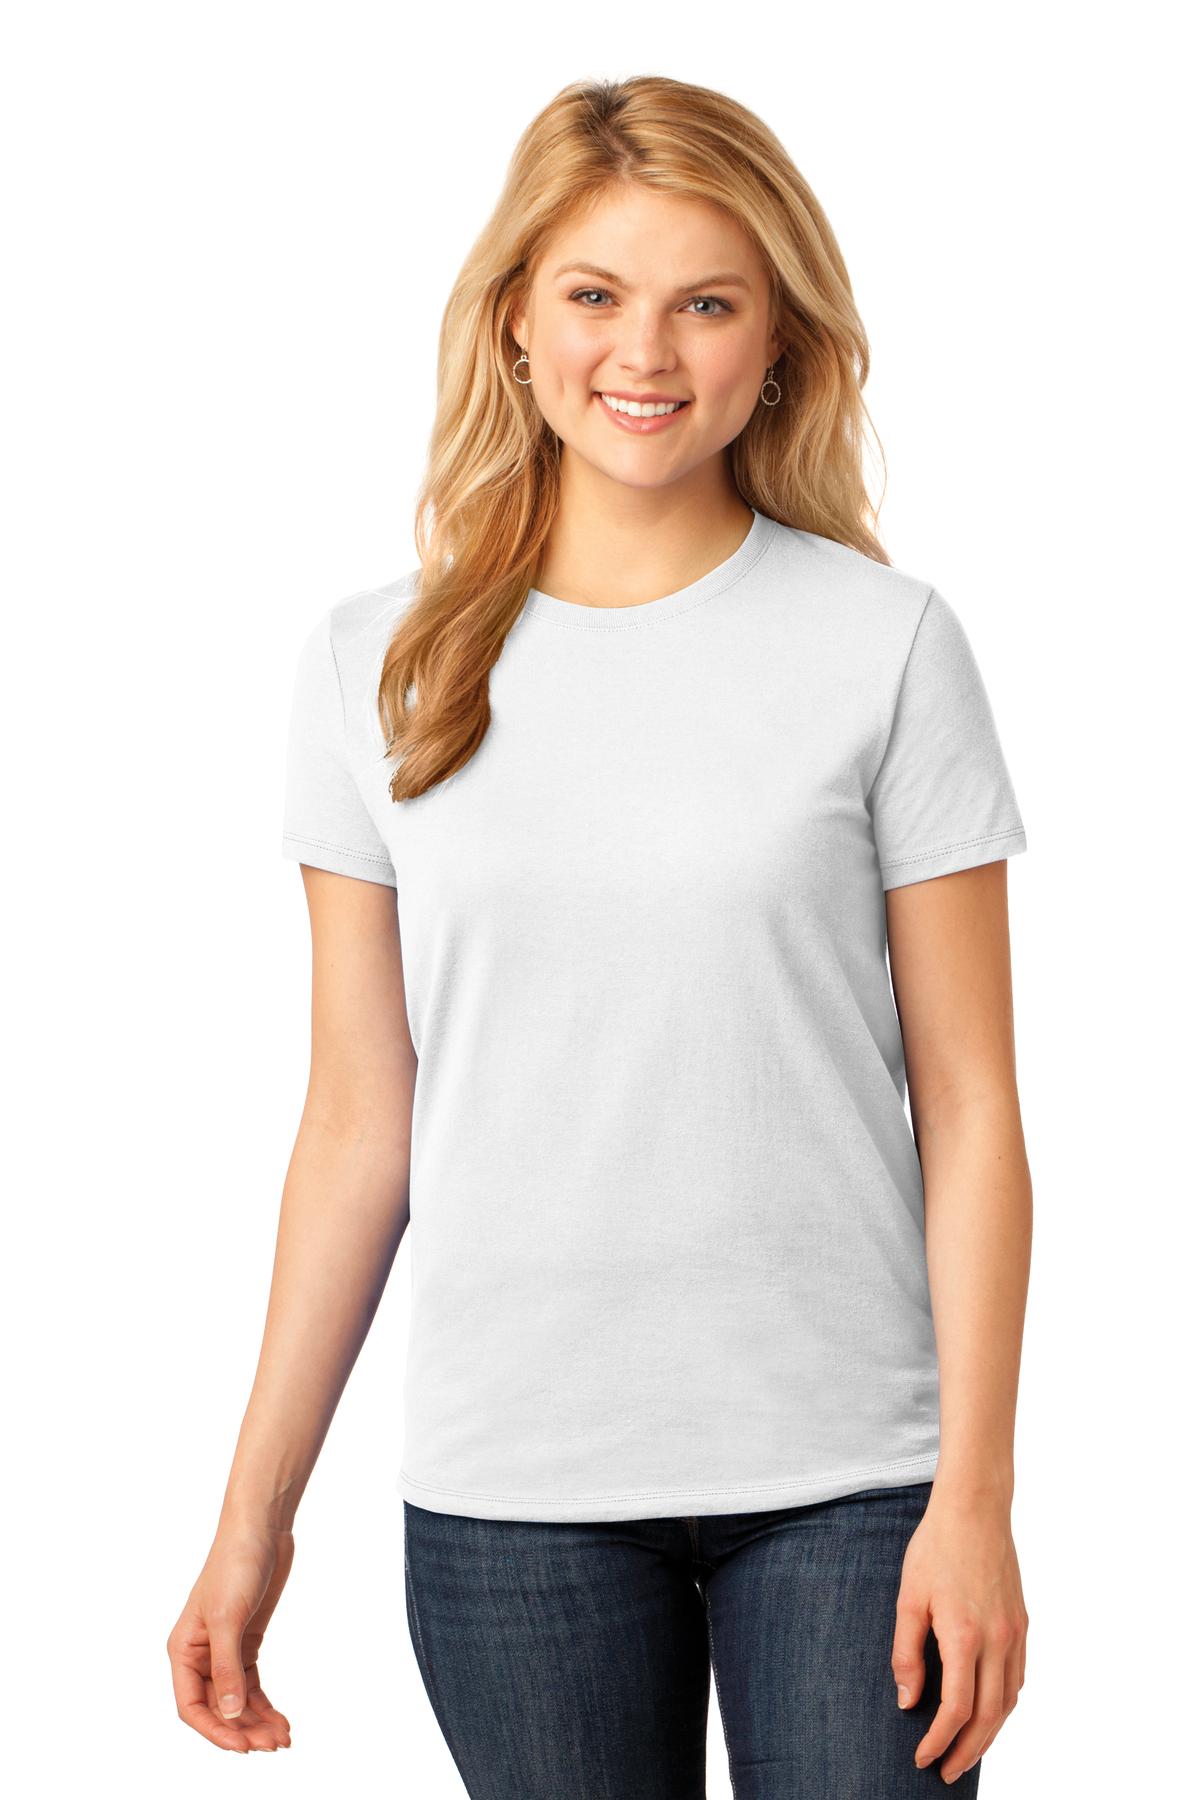 https://images.shirtspace.com/fullsize/0Le8RuLGEl0m%2B3XeBR78UA%3D%3D/75383/10173-port-company-lpc54-ladies-core-cotton-tee-front-white.jpg